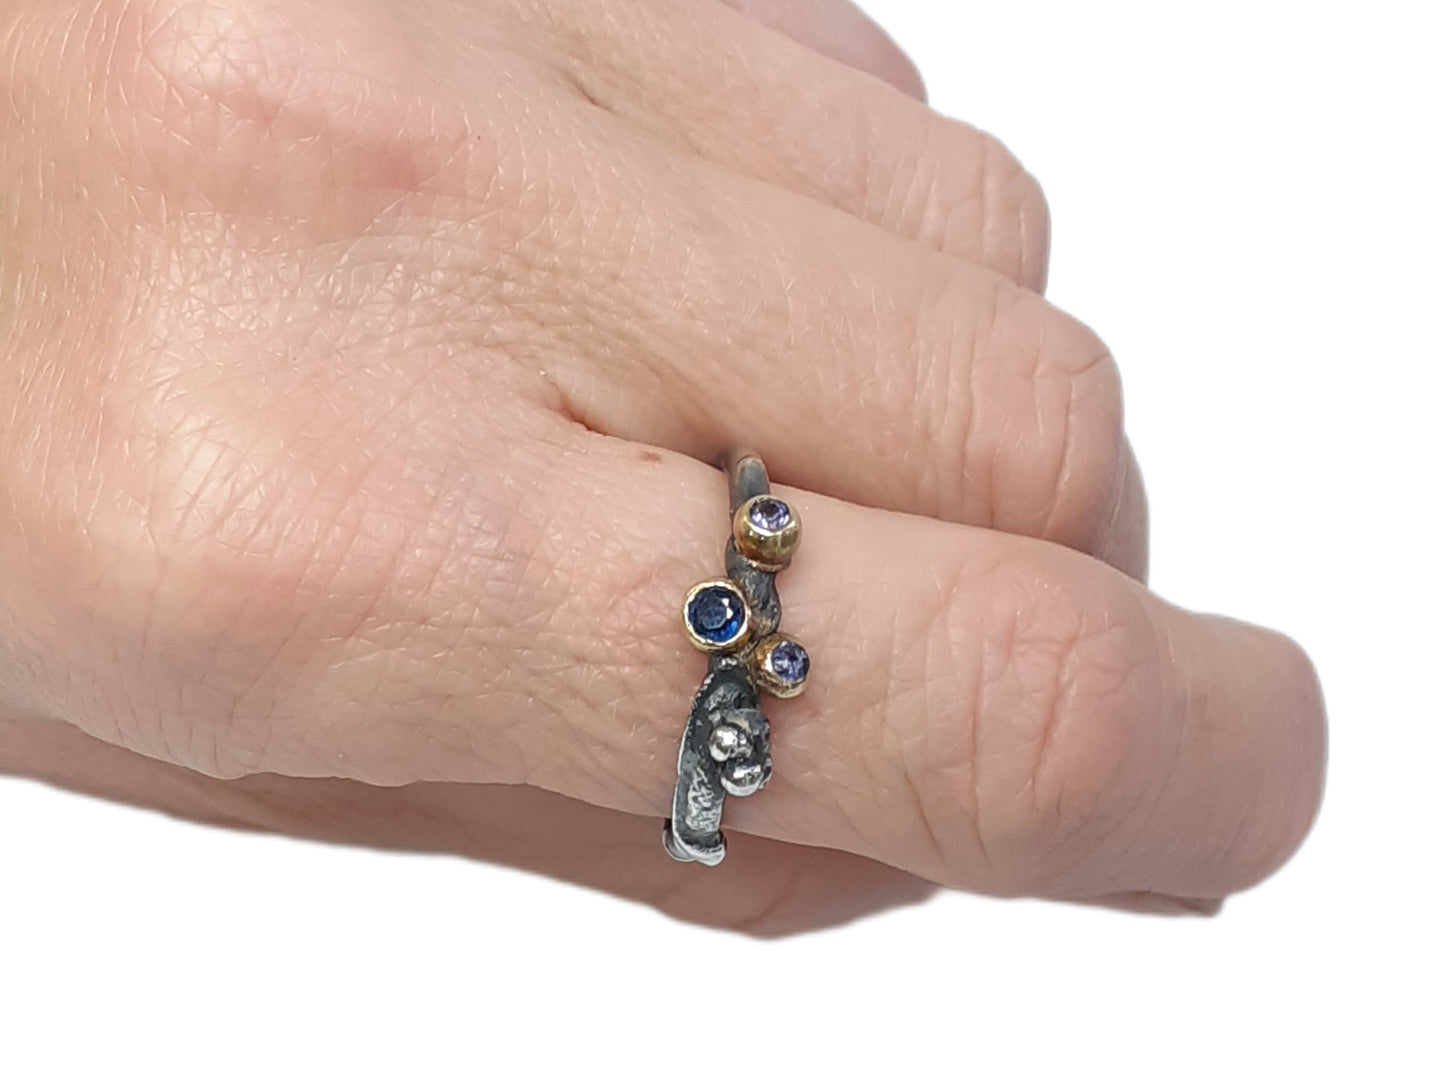 
                  
                    Dieser Ring wurde oxidiert, um den Kontrast zwischen Gold und Silber zu verstärken. Die Steine sind in einer Palette von dunkelblau, lila und lavendel gehalten. Der 3 mm große Stein ist ein Saphir, während die beiden anderen Steine Iolith sind. Wie immer ist das Gold und Silber recycelt.
                  
                